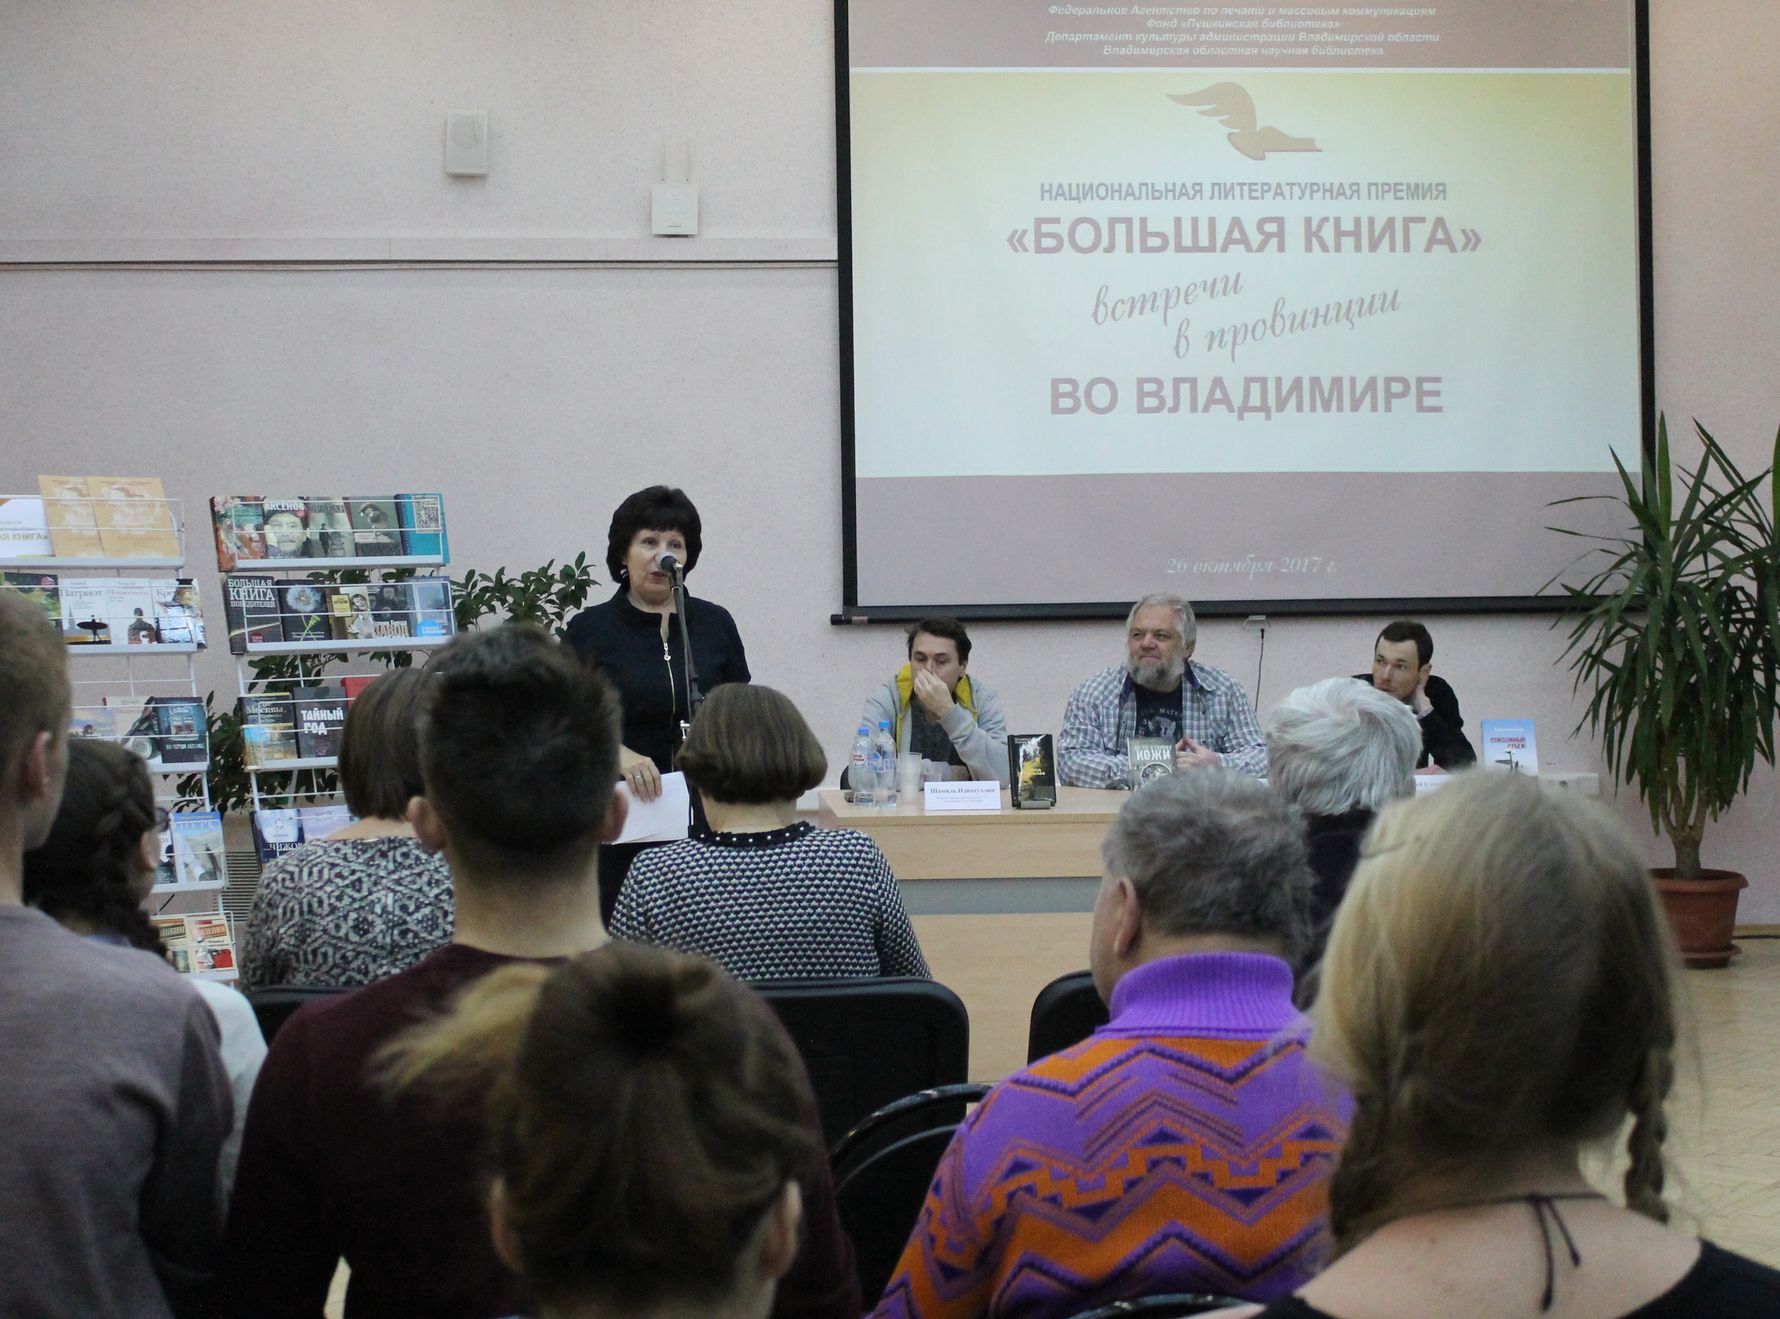 Всех собравшихся приветствует директор библиотеки Татьяна Васильевна Брагина